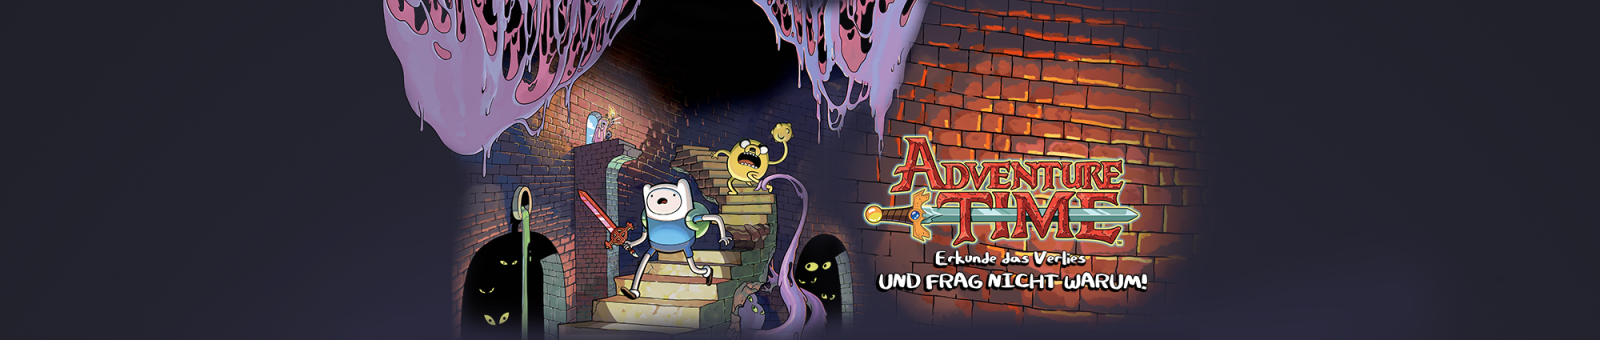 Adventure Time™: Erkunde das Verlies UND FRAG NICHT WARUM!